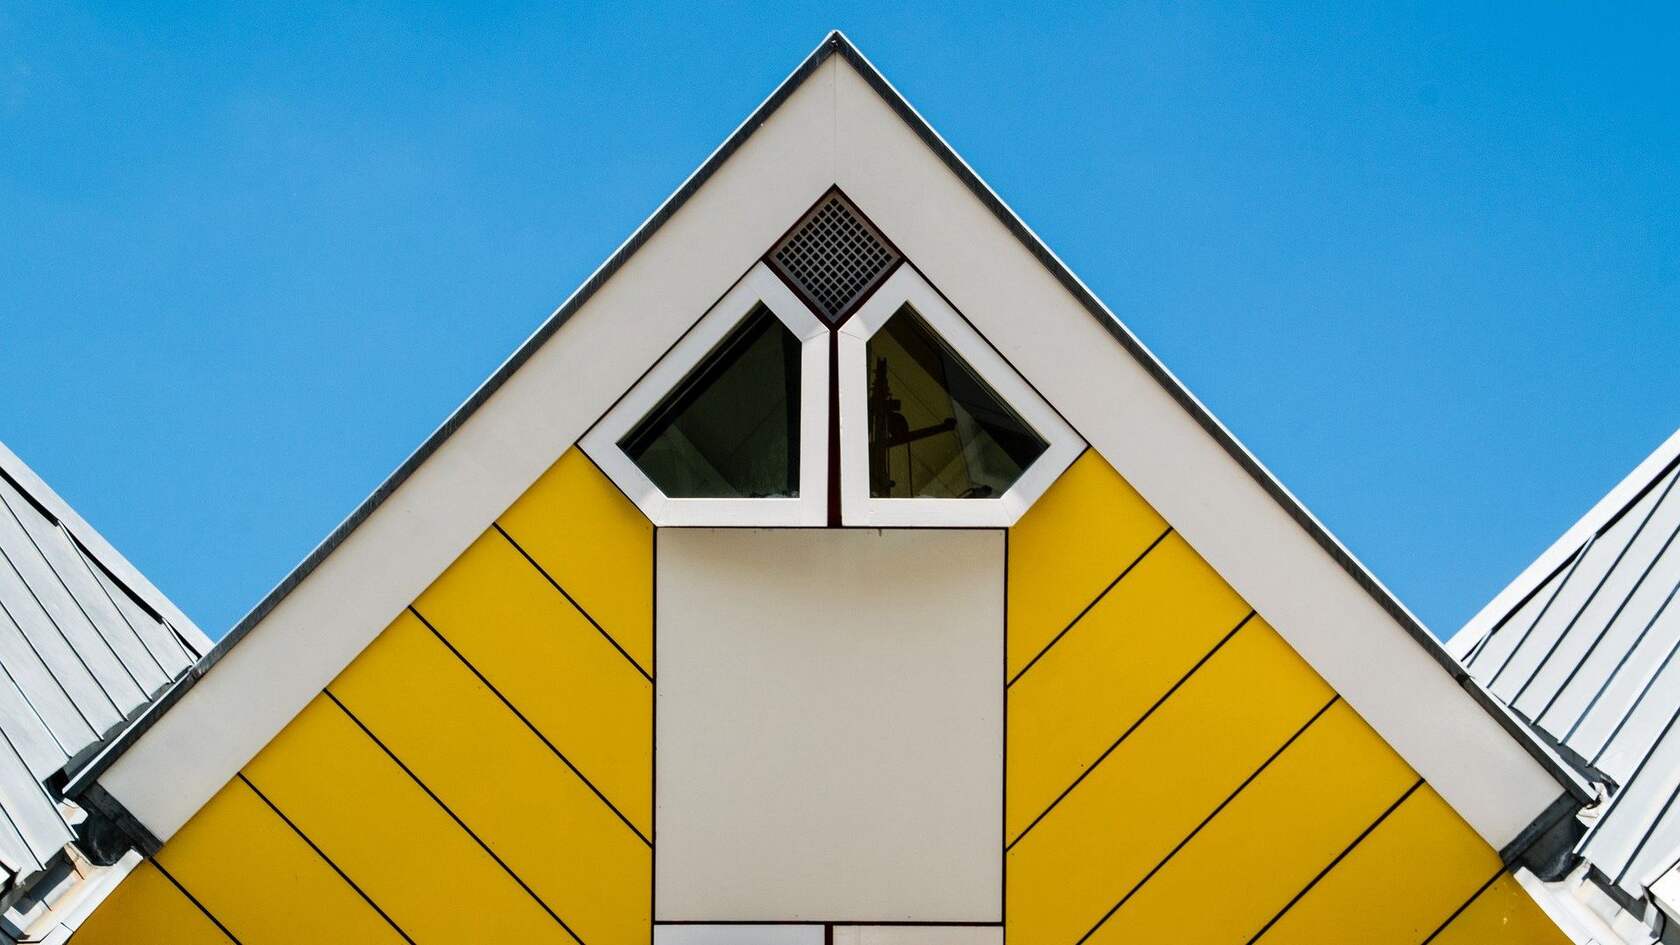 欧洲 荷兰 鹿特丹 创意 设计感十足的奇特立方体房子壁纸图片第4张图片